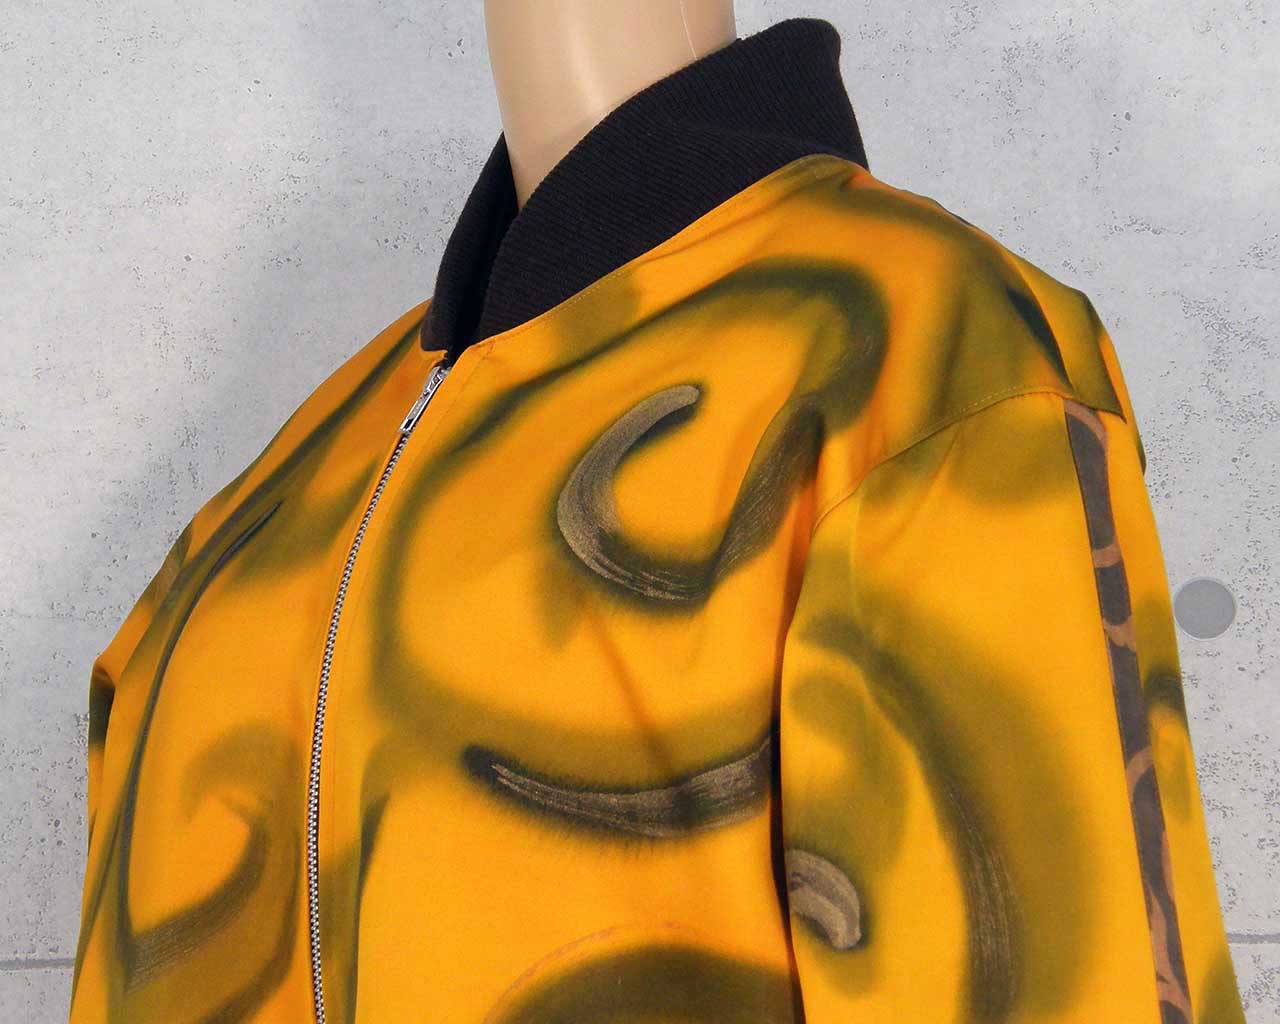 Kimono remake blouson with arabesque pattern